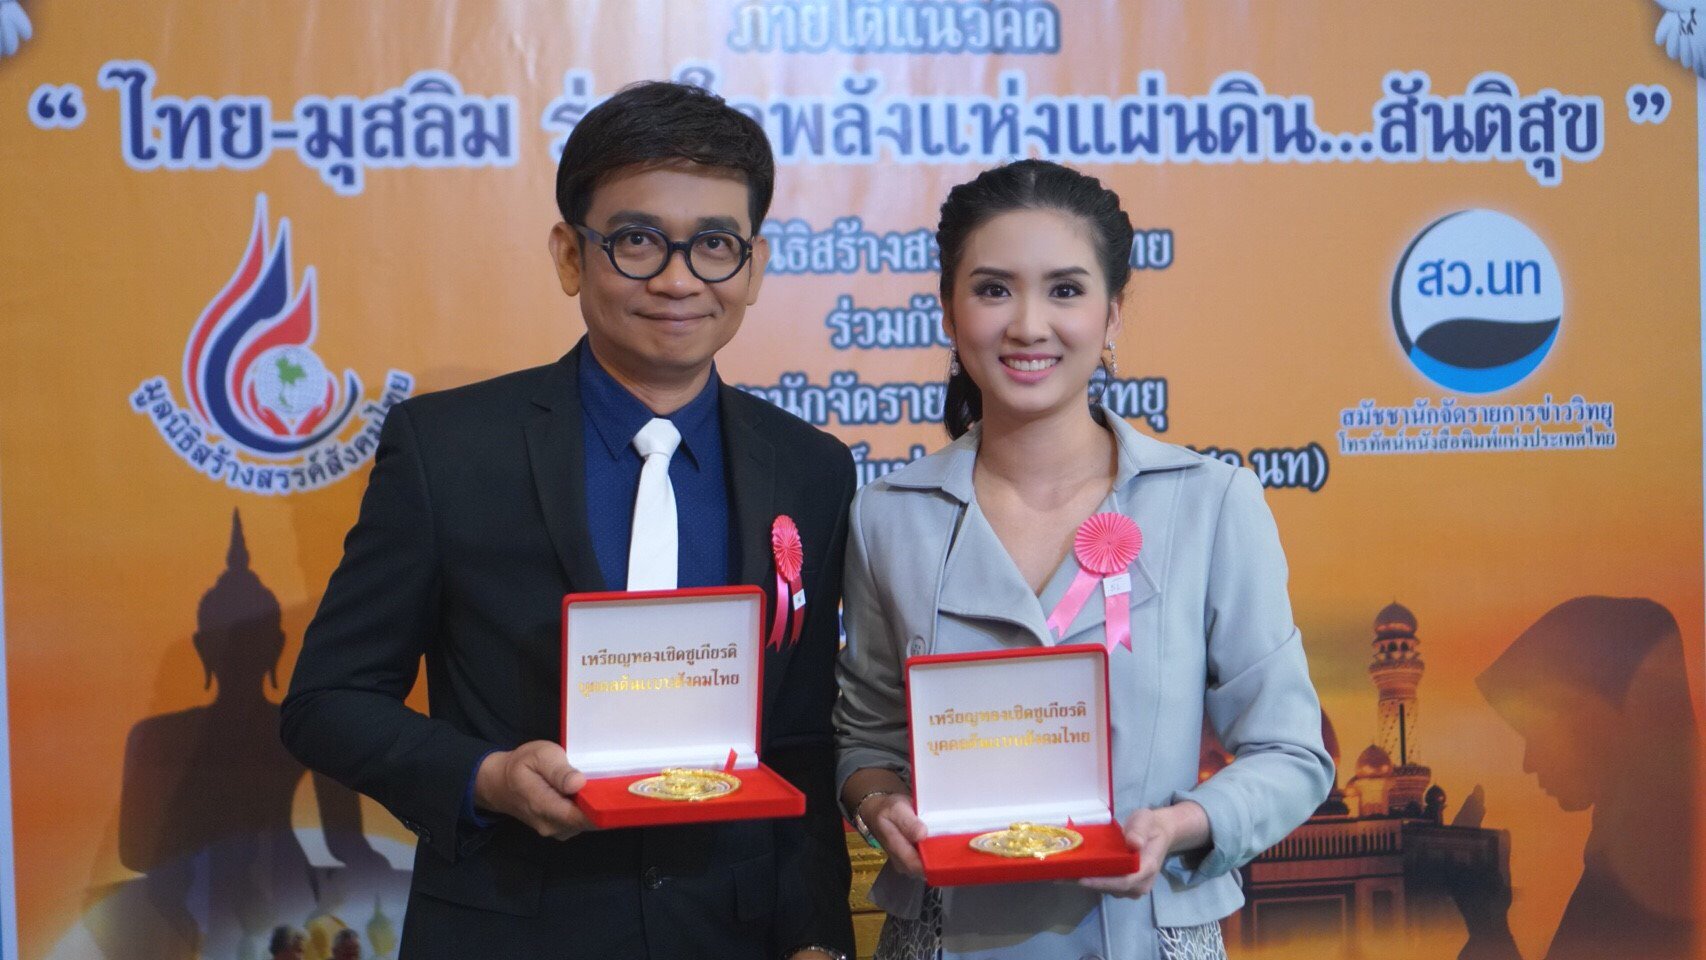 เหรียญทองเชิดชูเกียรติ “บุคคลต้นแบบสังคมไทย” ประจำปี 2561 โครงการพลังแห่งแผ่นดิน ครั้งที่ 1 ภานุพันธ์ ครุฑโต (พัน พลุแตก)